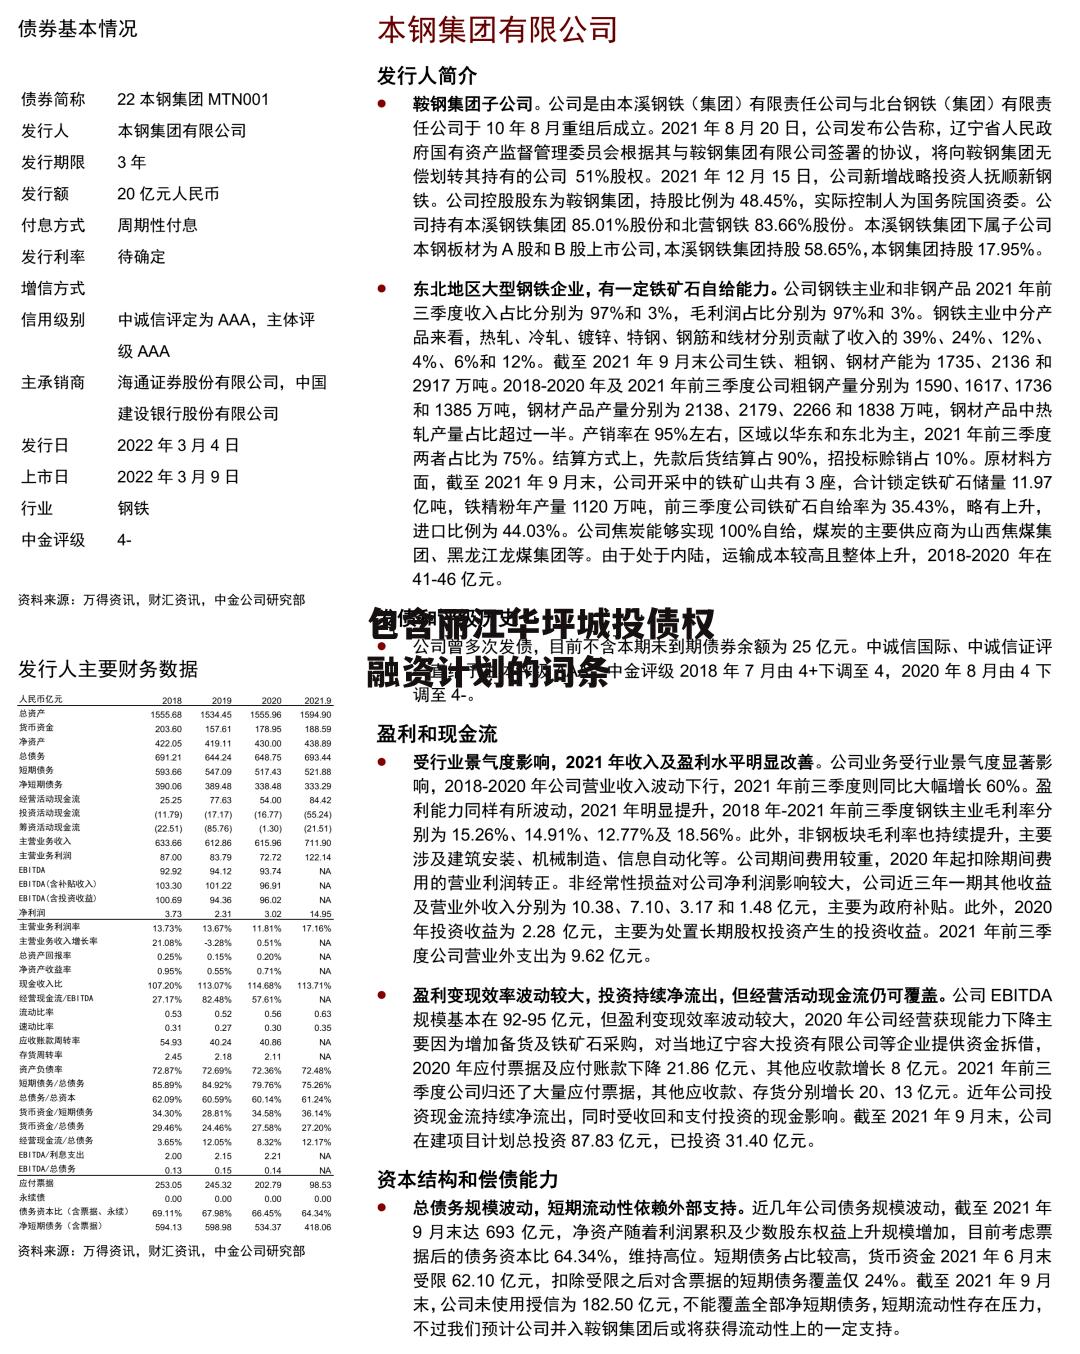 包含丽江华坪城投债权融资计划的词条